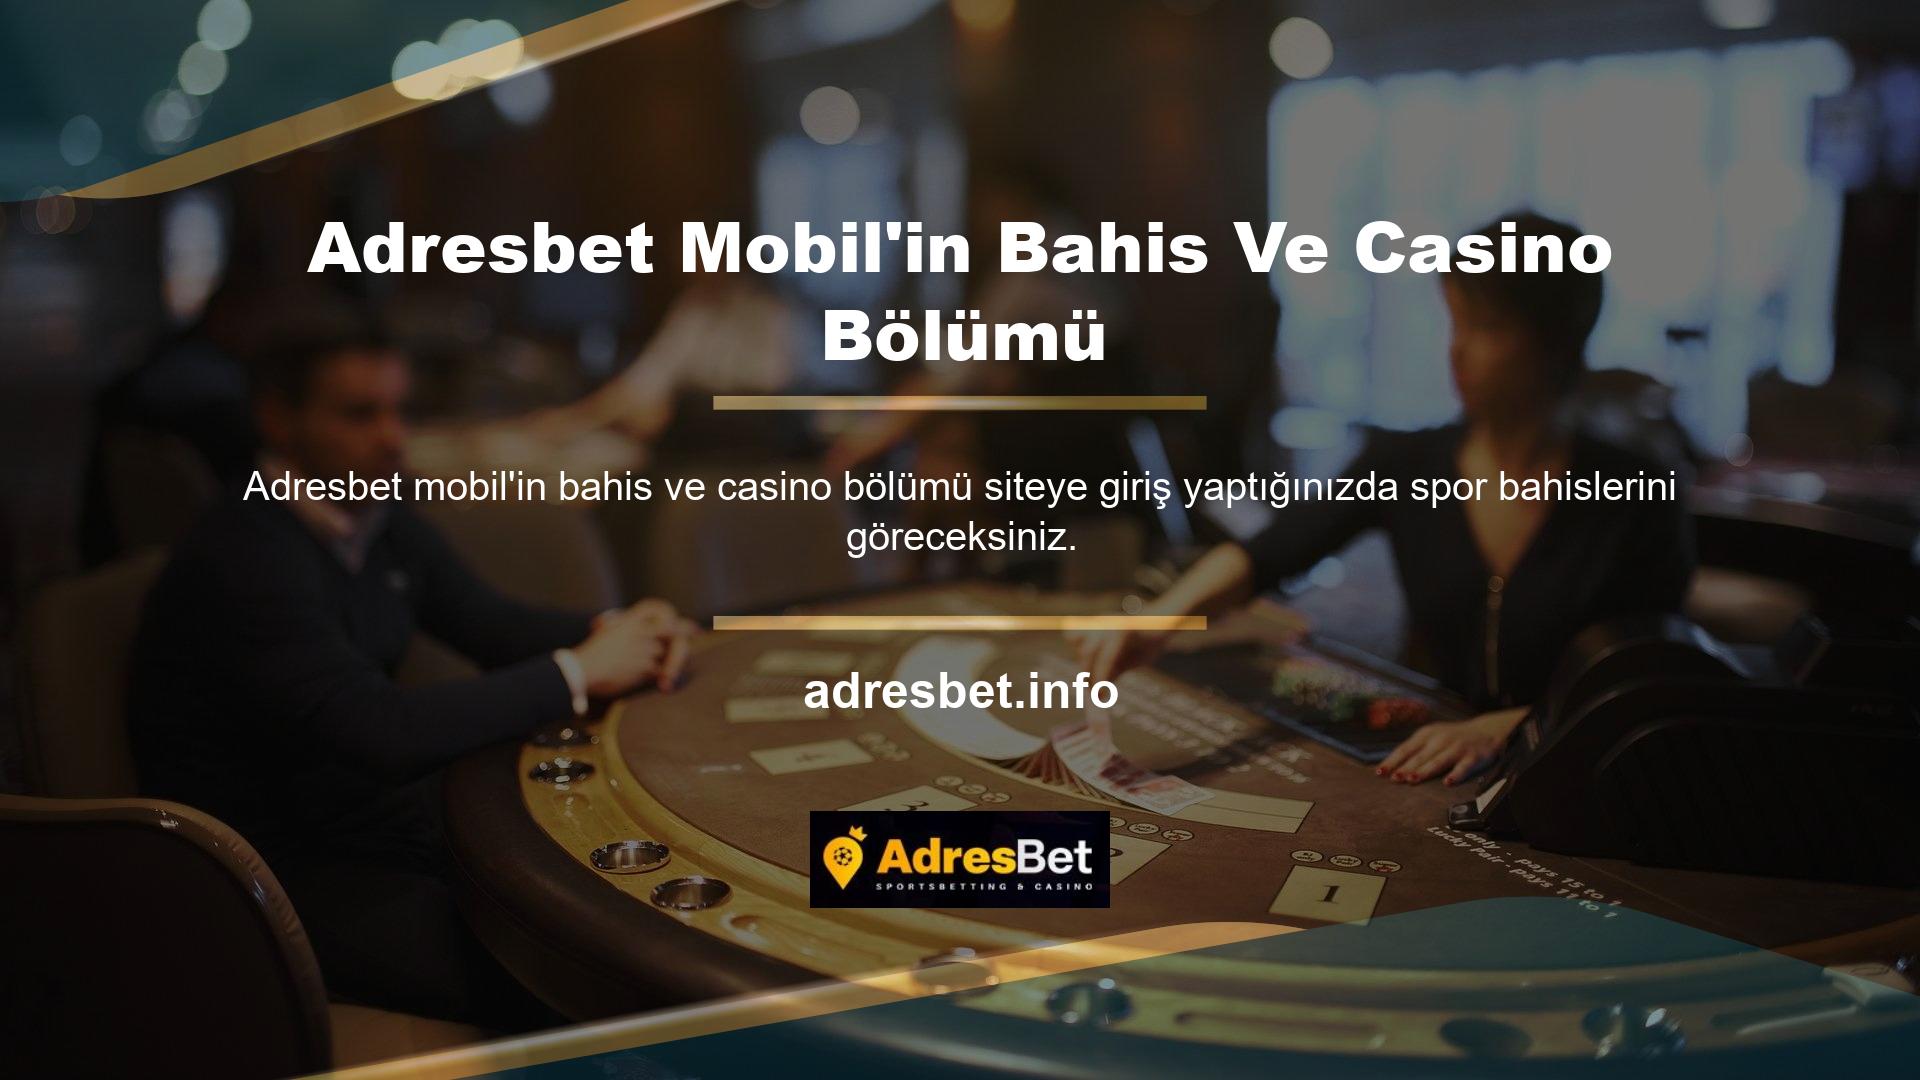 Bu nedenle Adresbet Mobil'in Bahis ve Casino bölümünün ana sayfası bu kategoriye ayrılmıştır